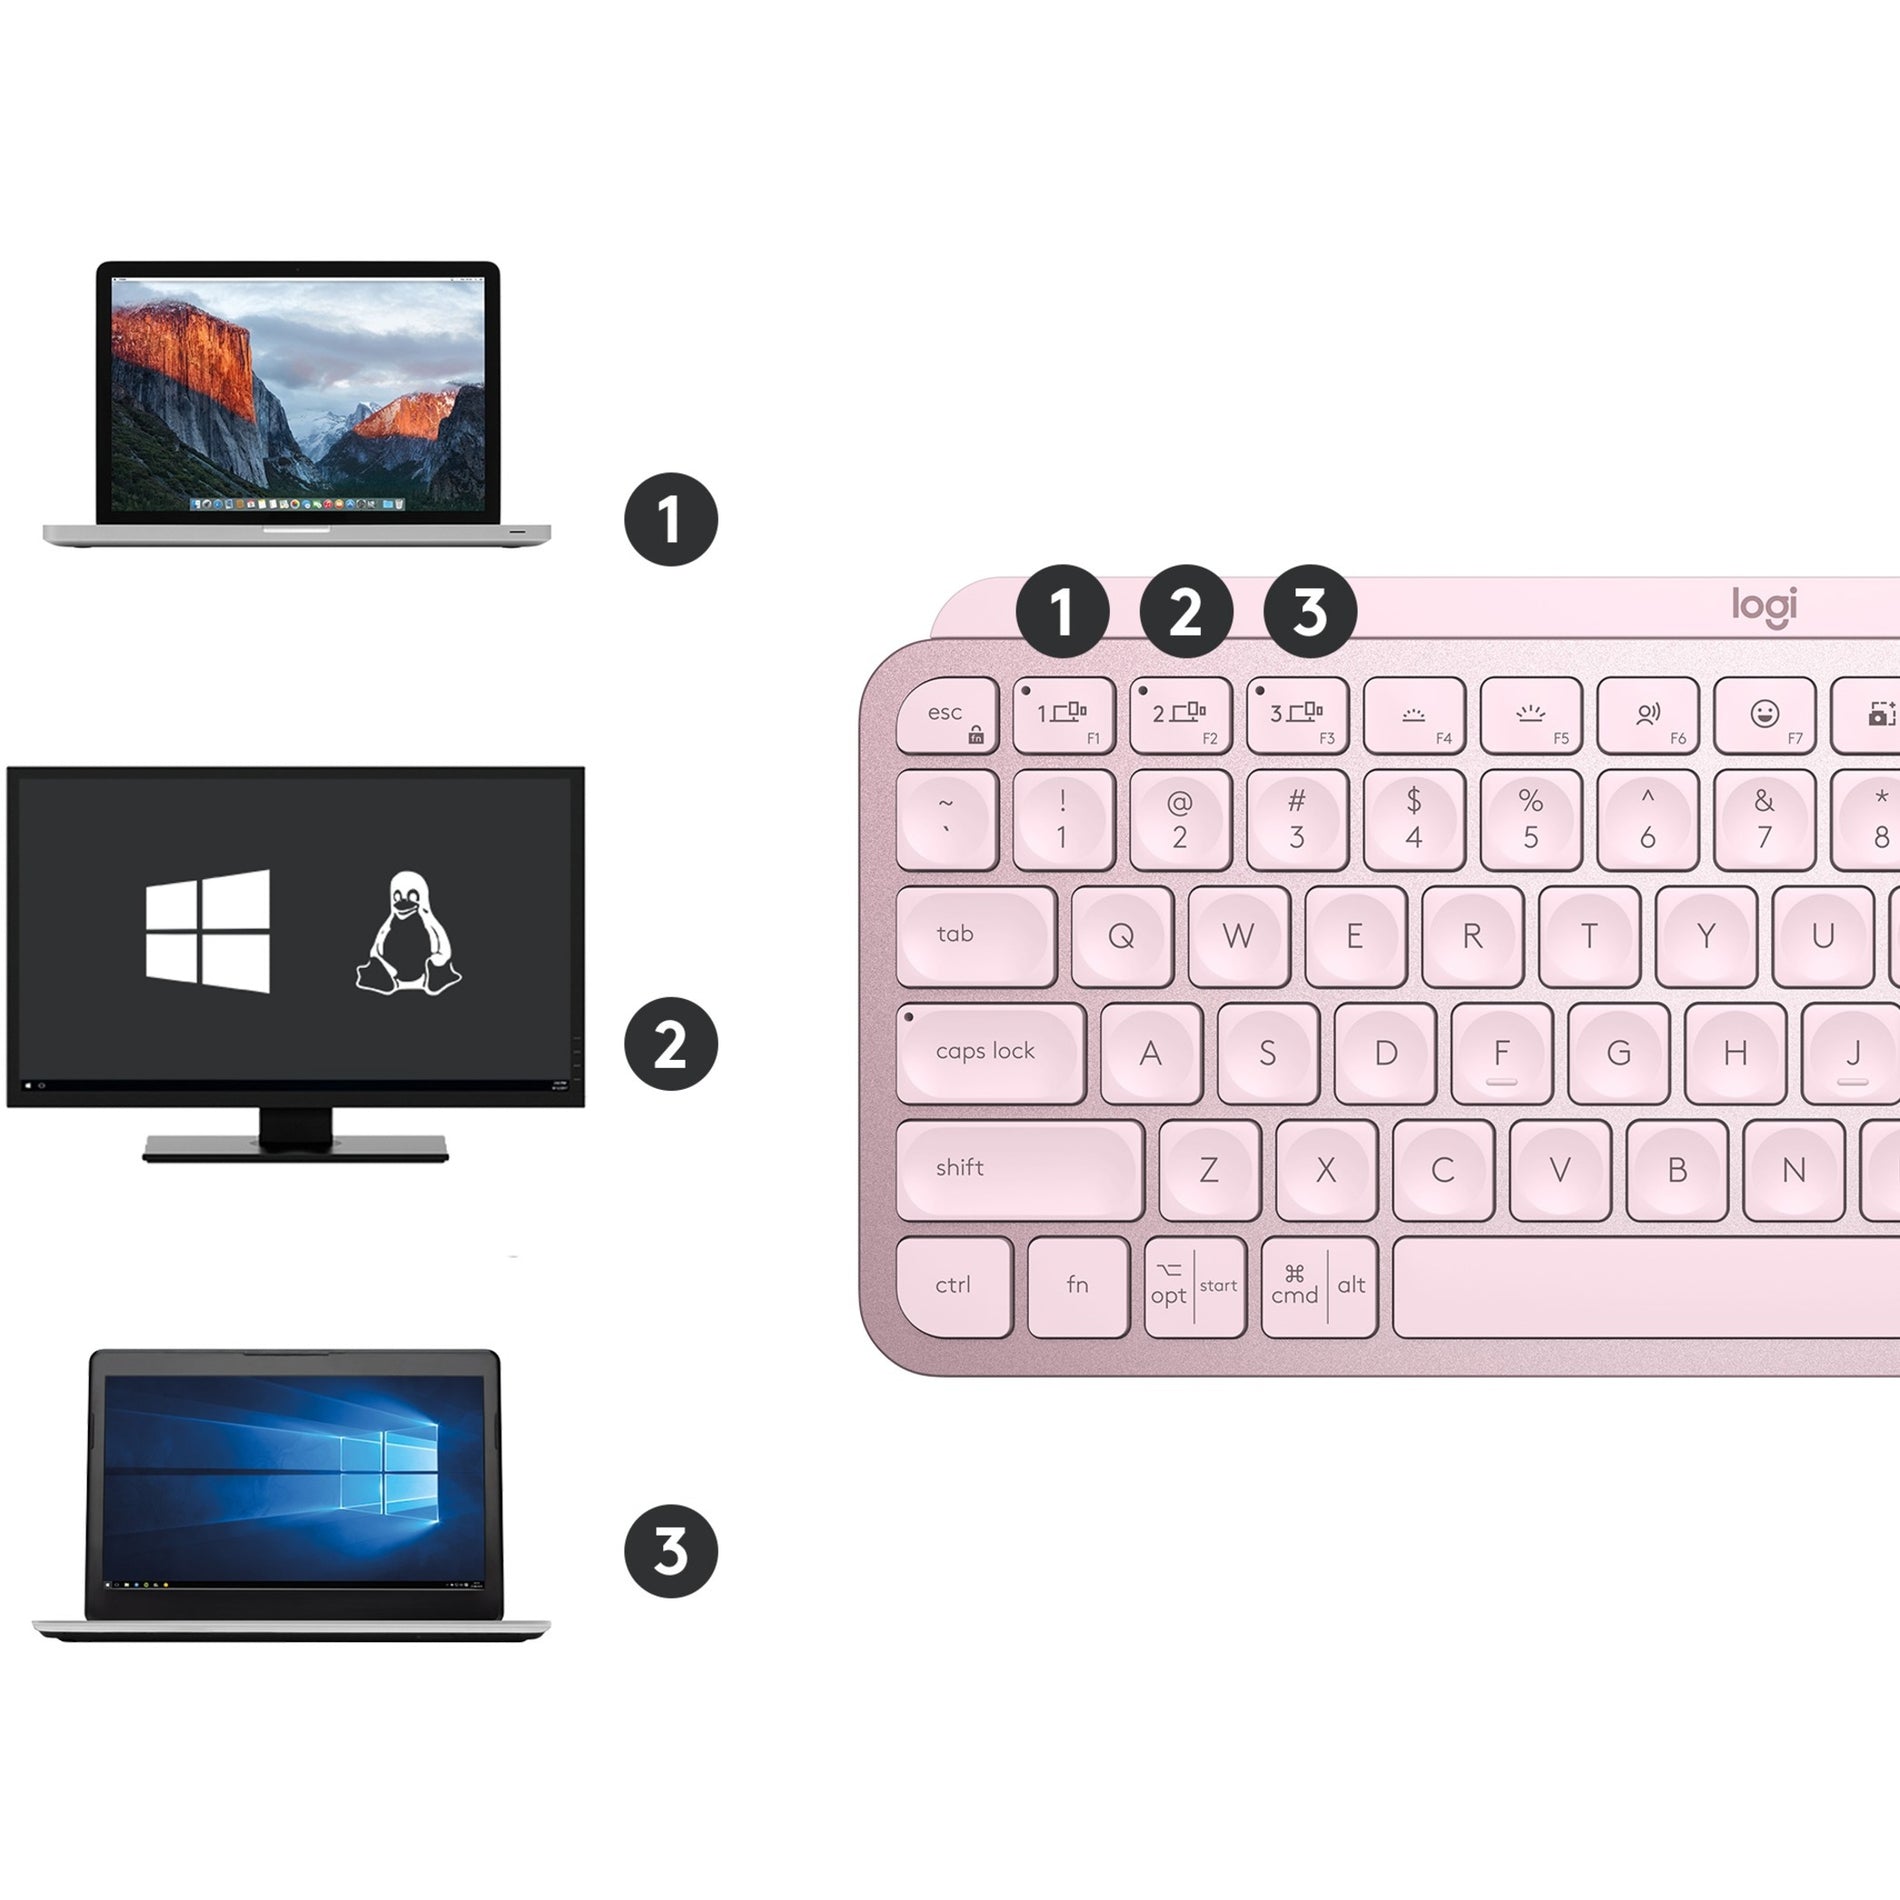 Logitech 920-010474 MX Keys Mini (Rose) Wireless Illuminated Keyboard, Compact and Ergonomic